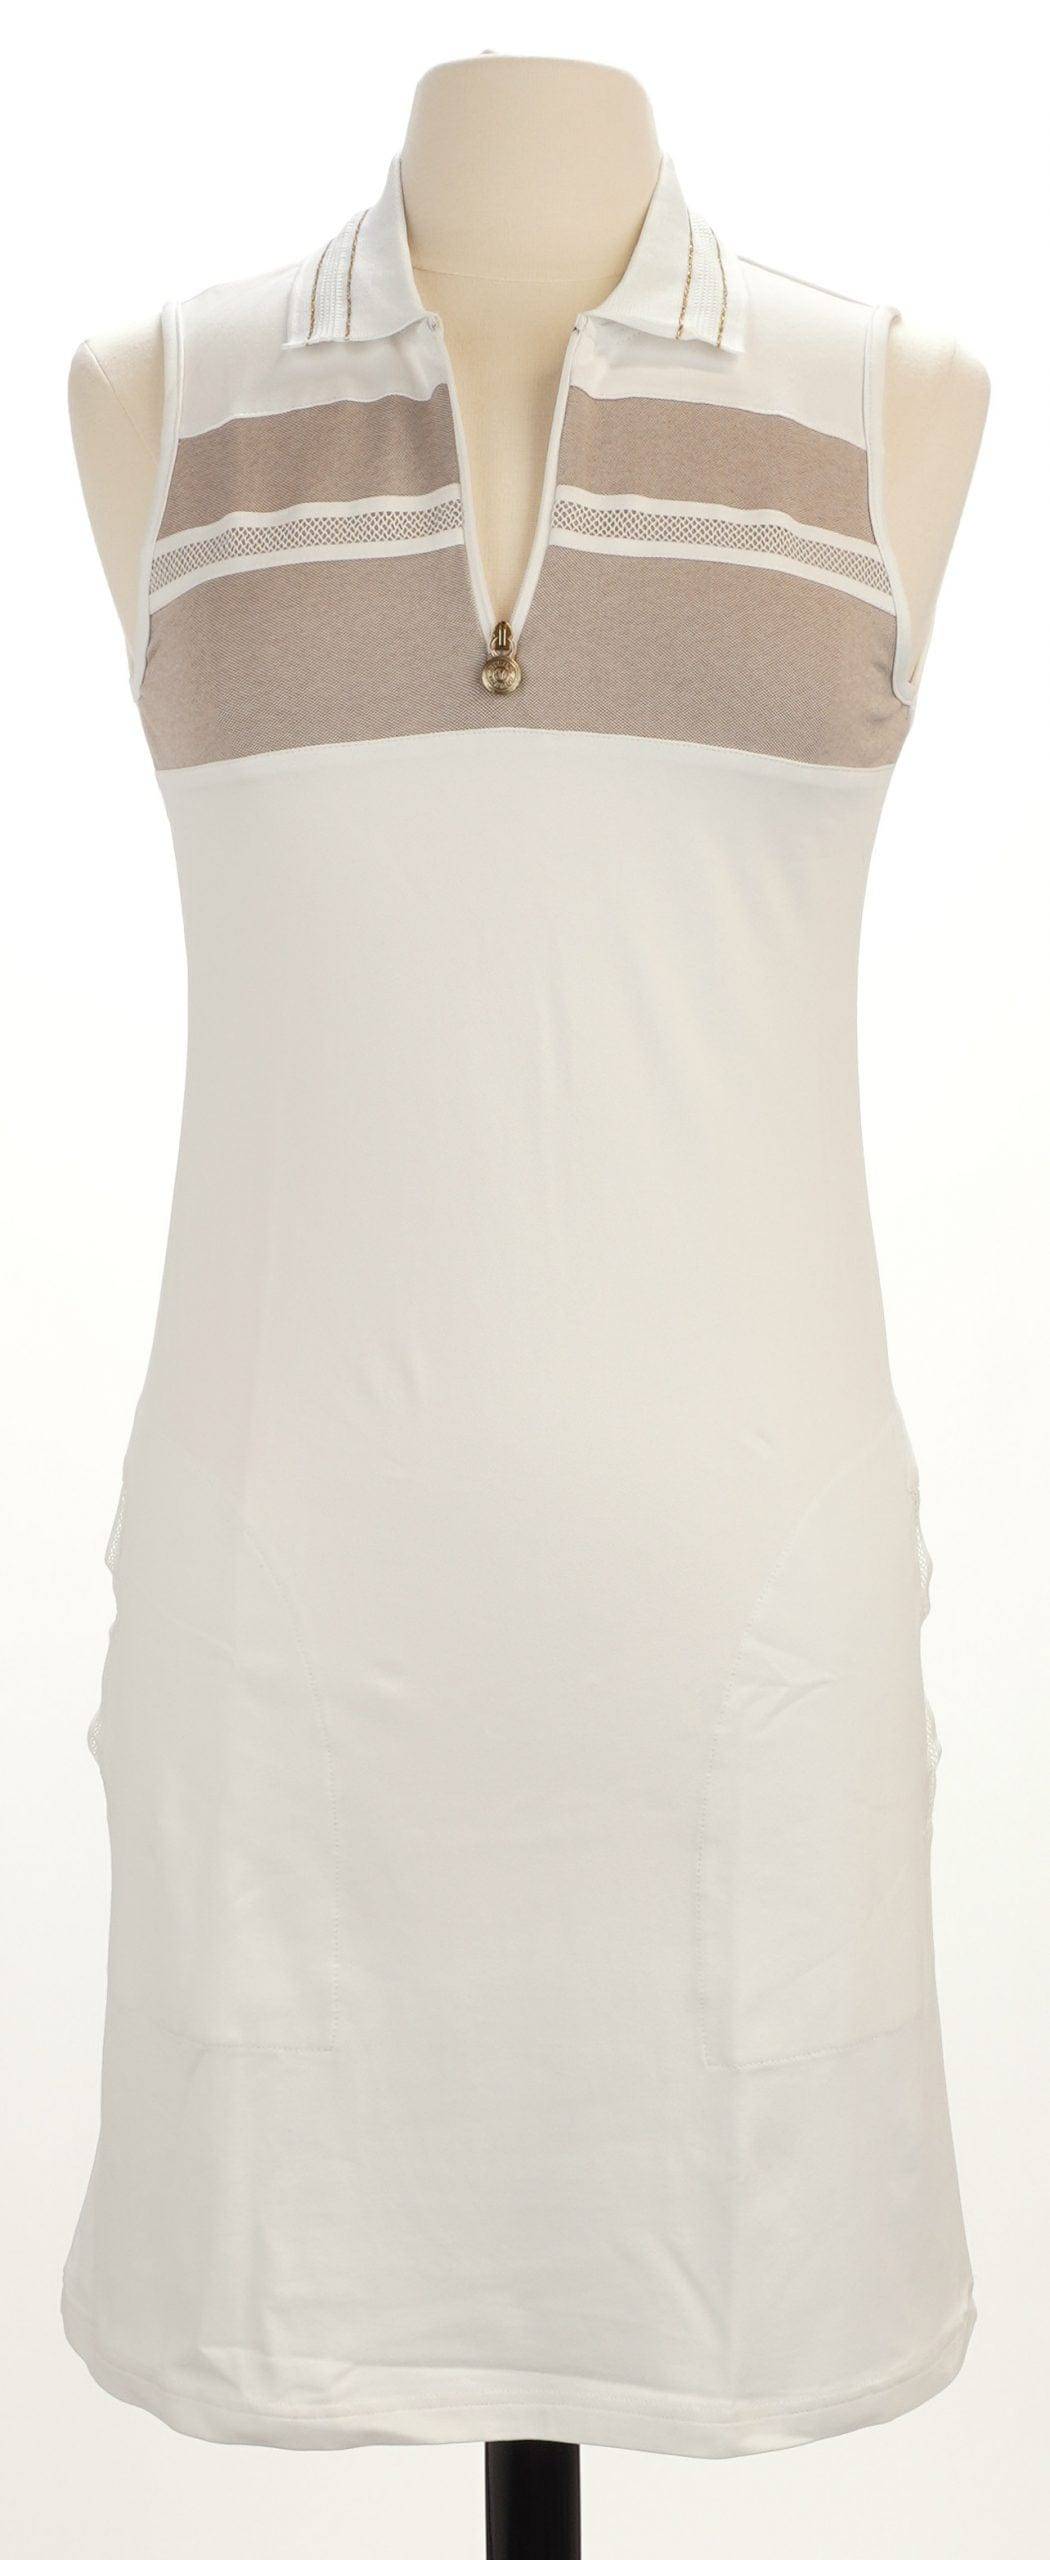 Golfino 6 / White Golfino Desert Island Dress Size 36 (US Size 6)